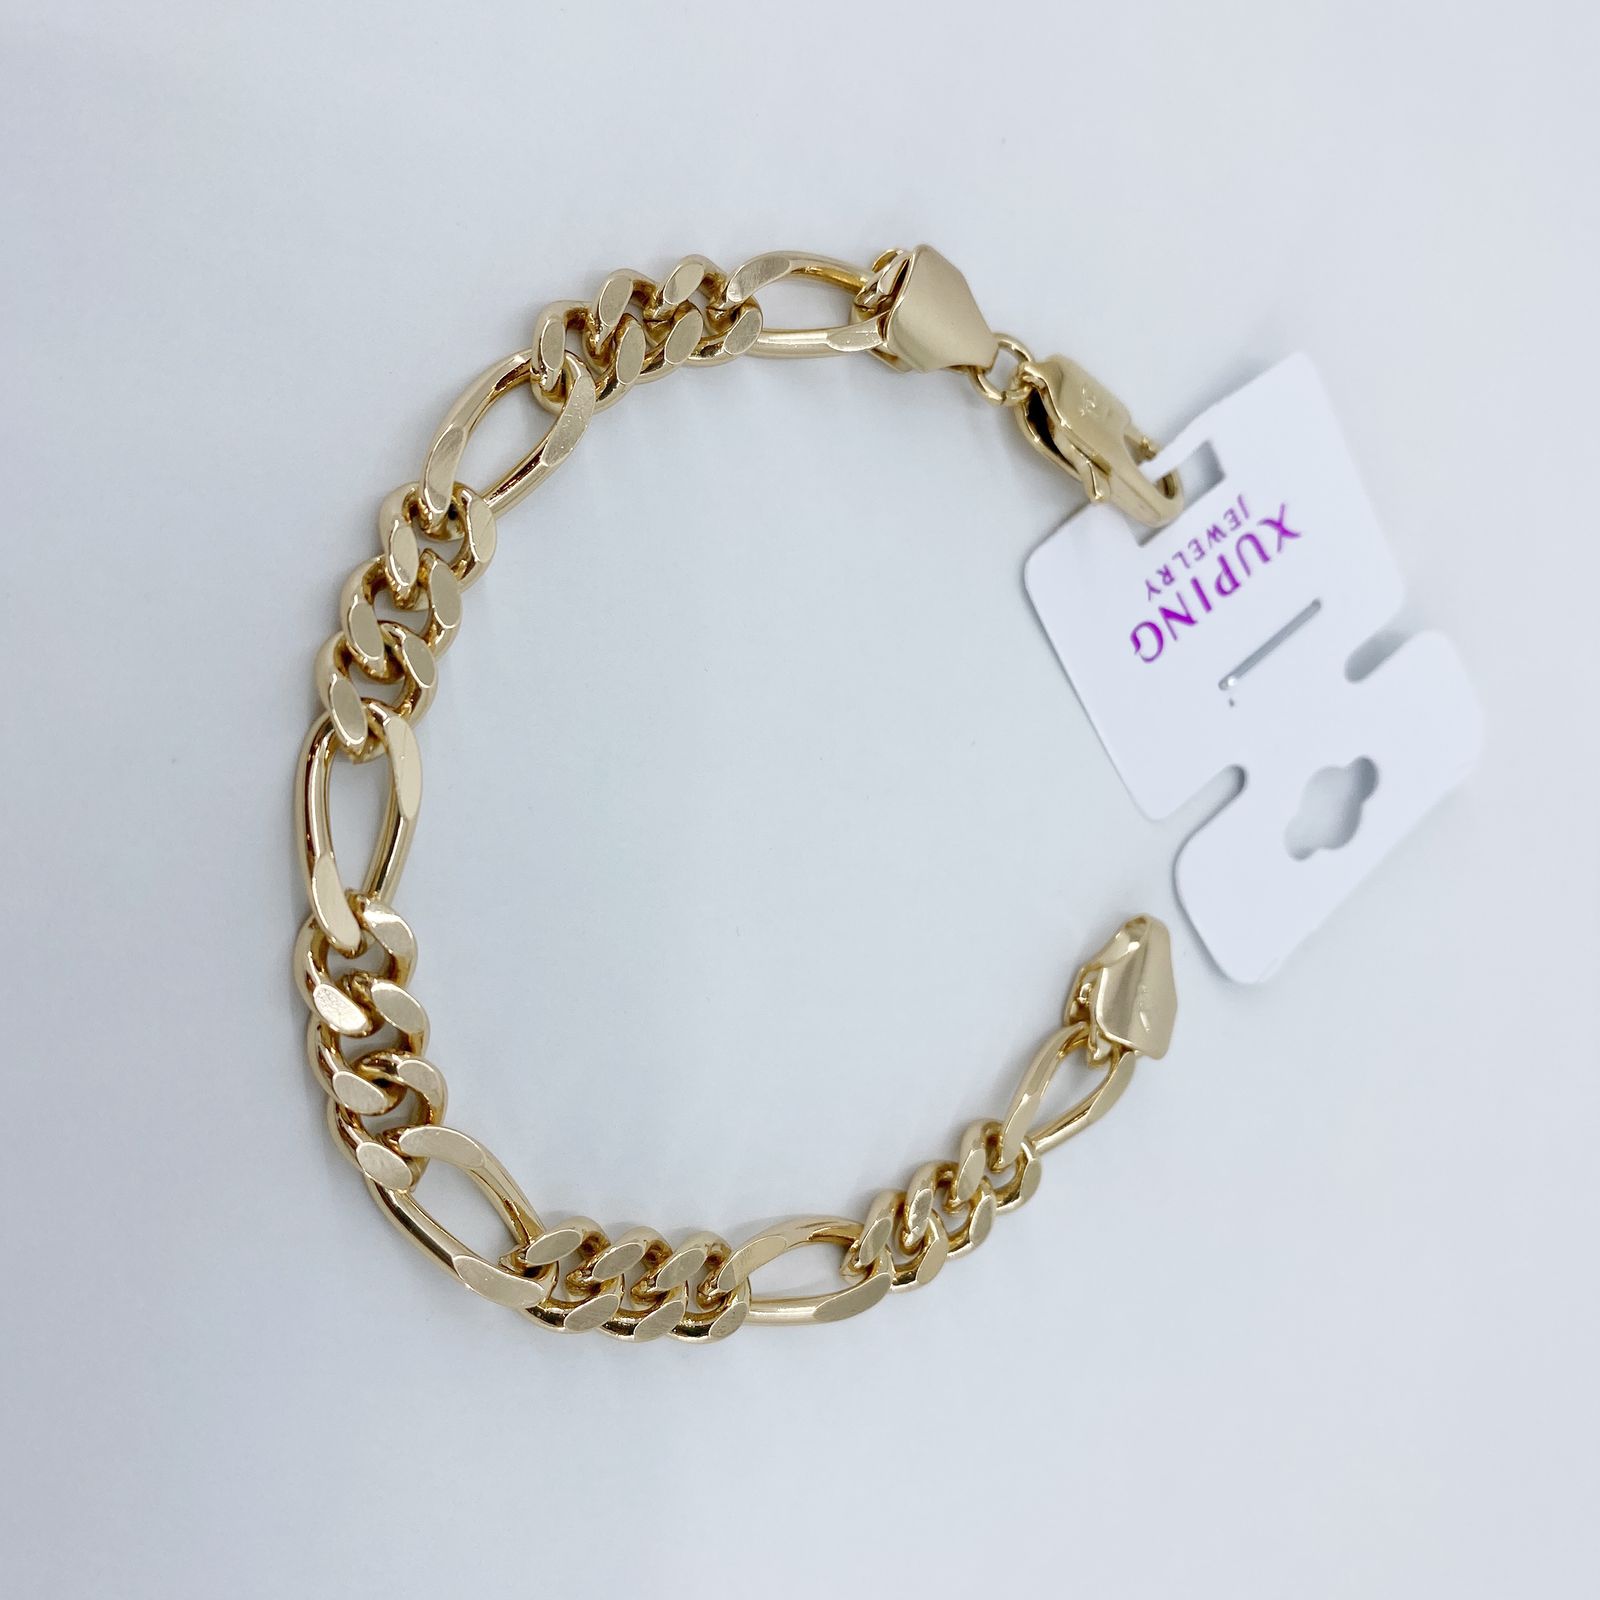 دستبند زنانه ژوپینگ کد B3028 -  - 2